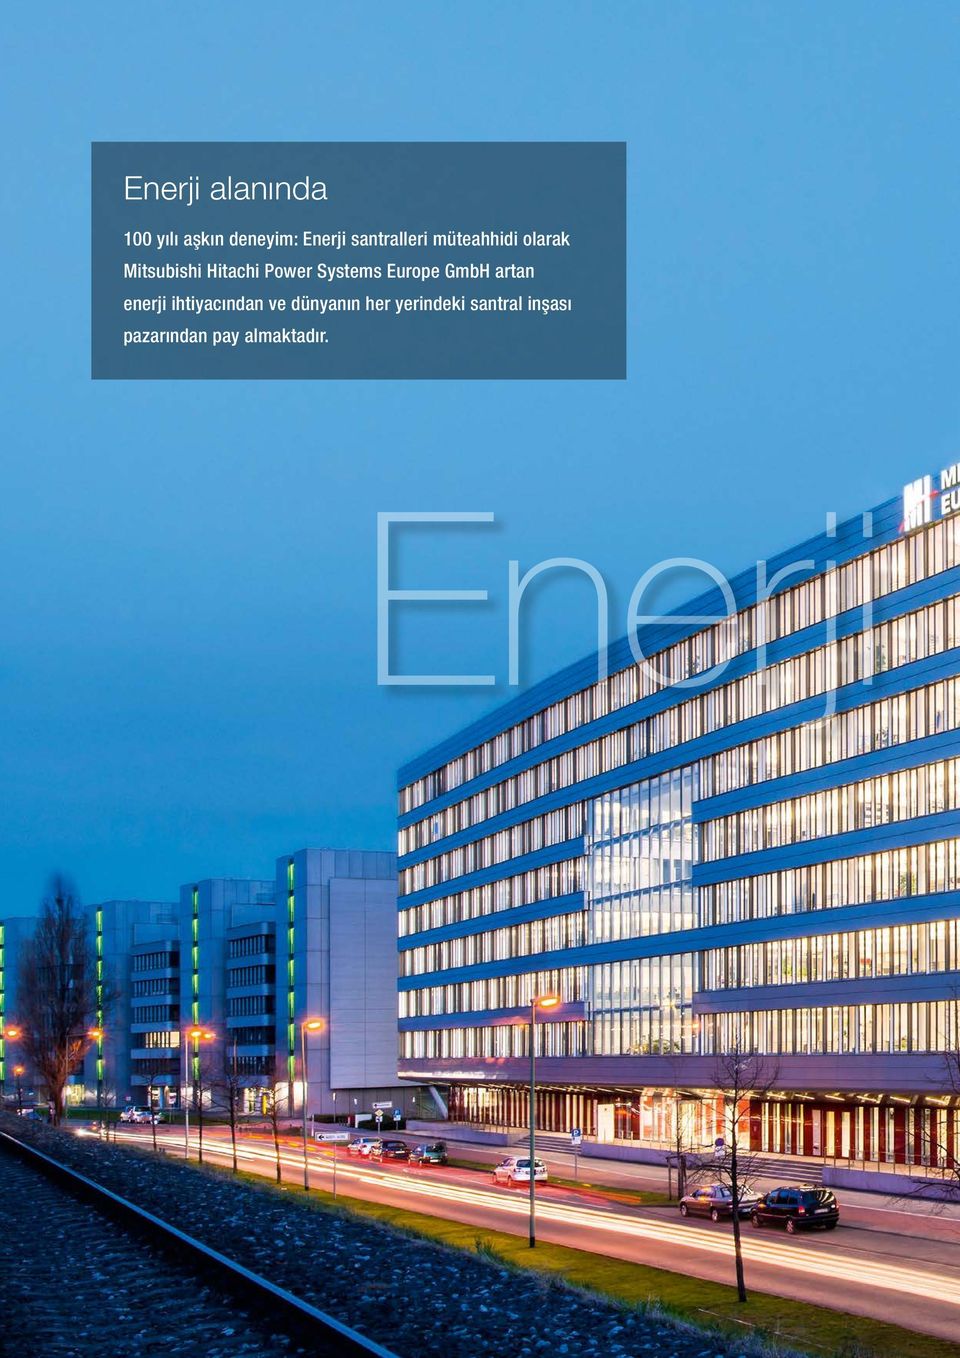 Systems Europe GmbH artan enerji ihtiyacından ve